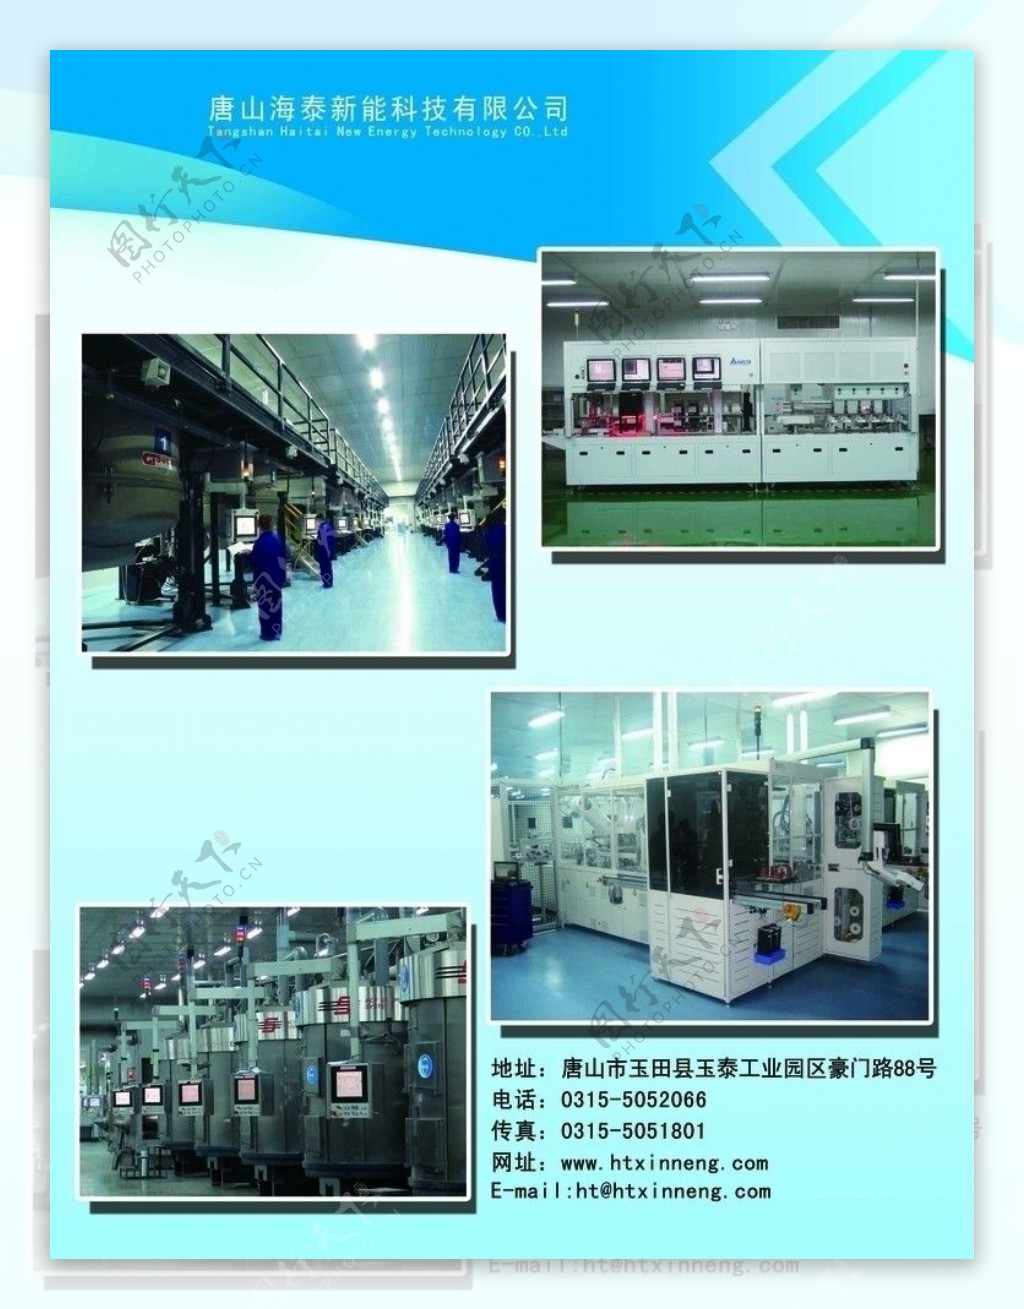 海泰新能科技公司手册图片